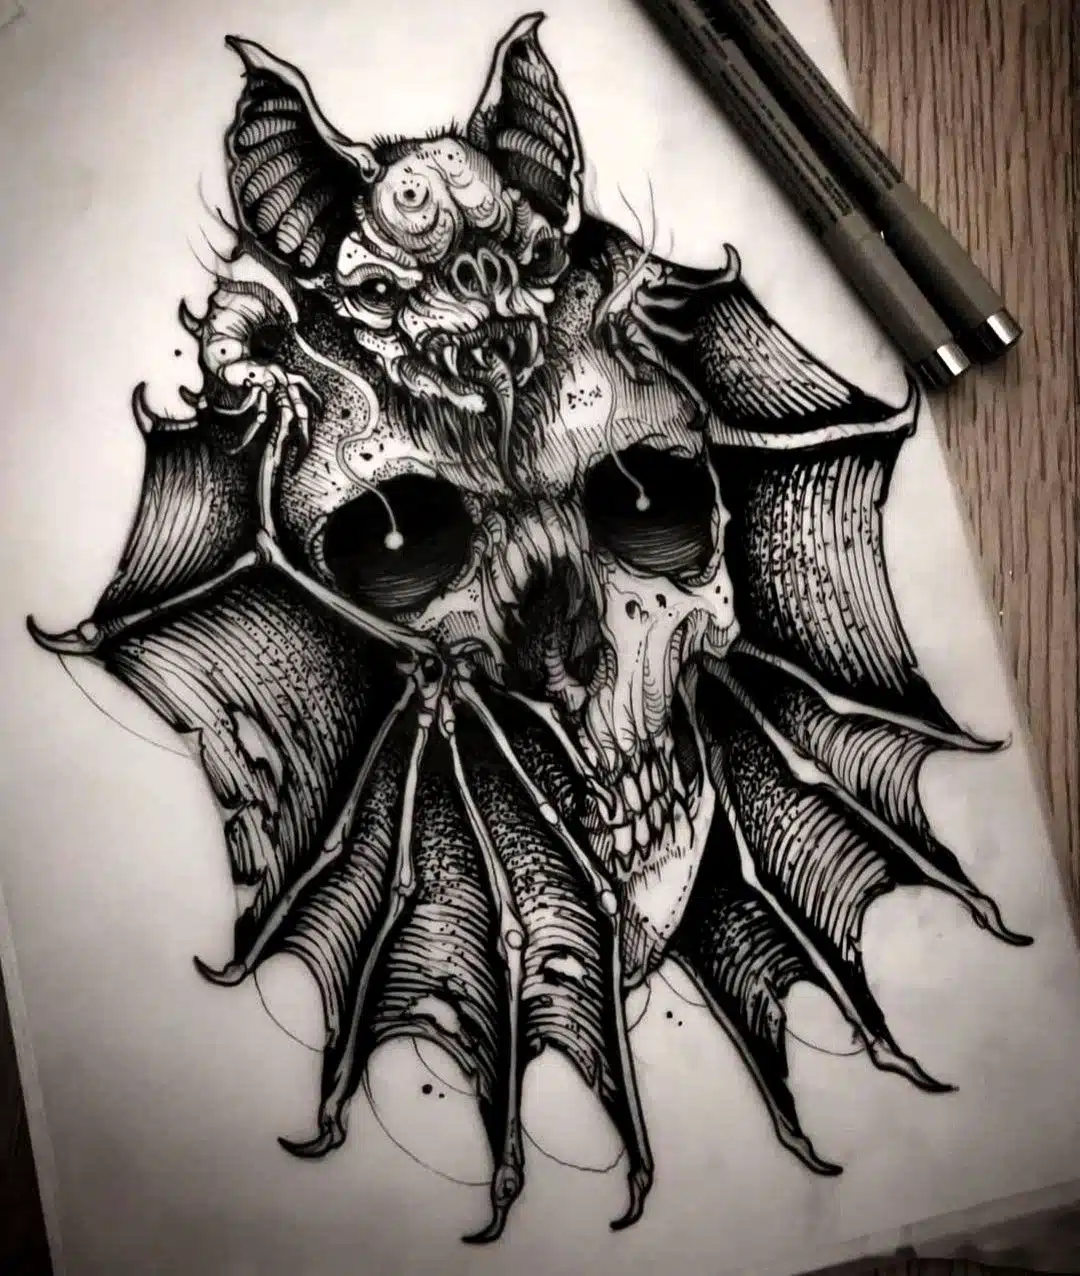 Bat and skull tattoo